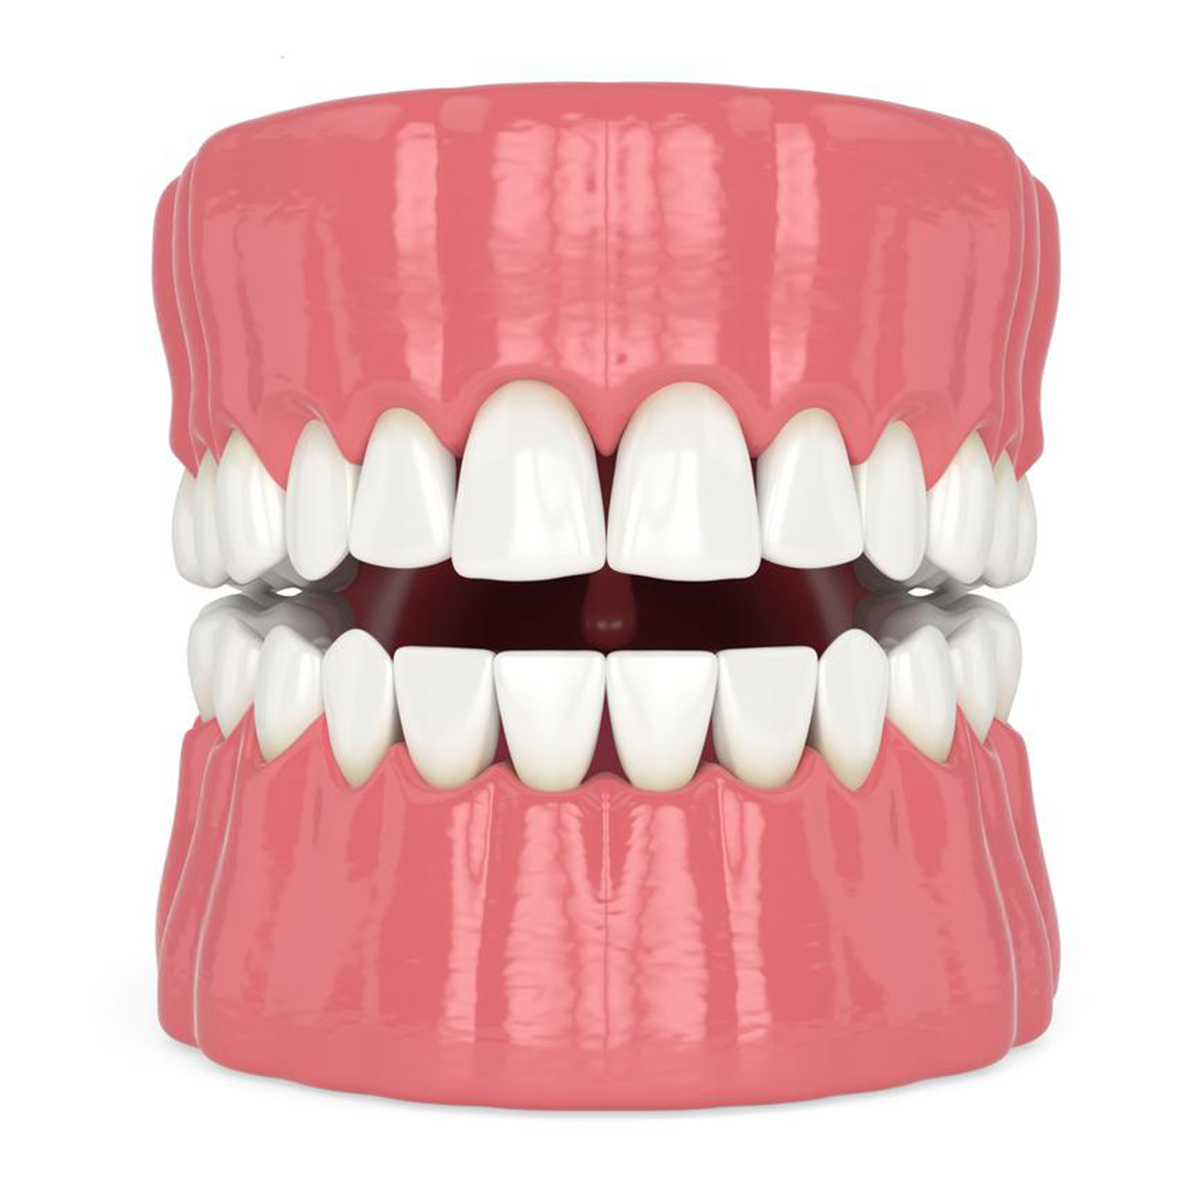 Fractured-Teeth-Restoration-01